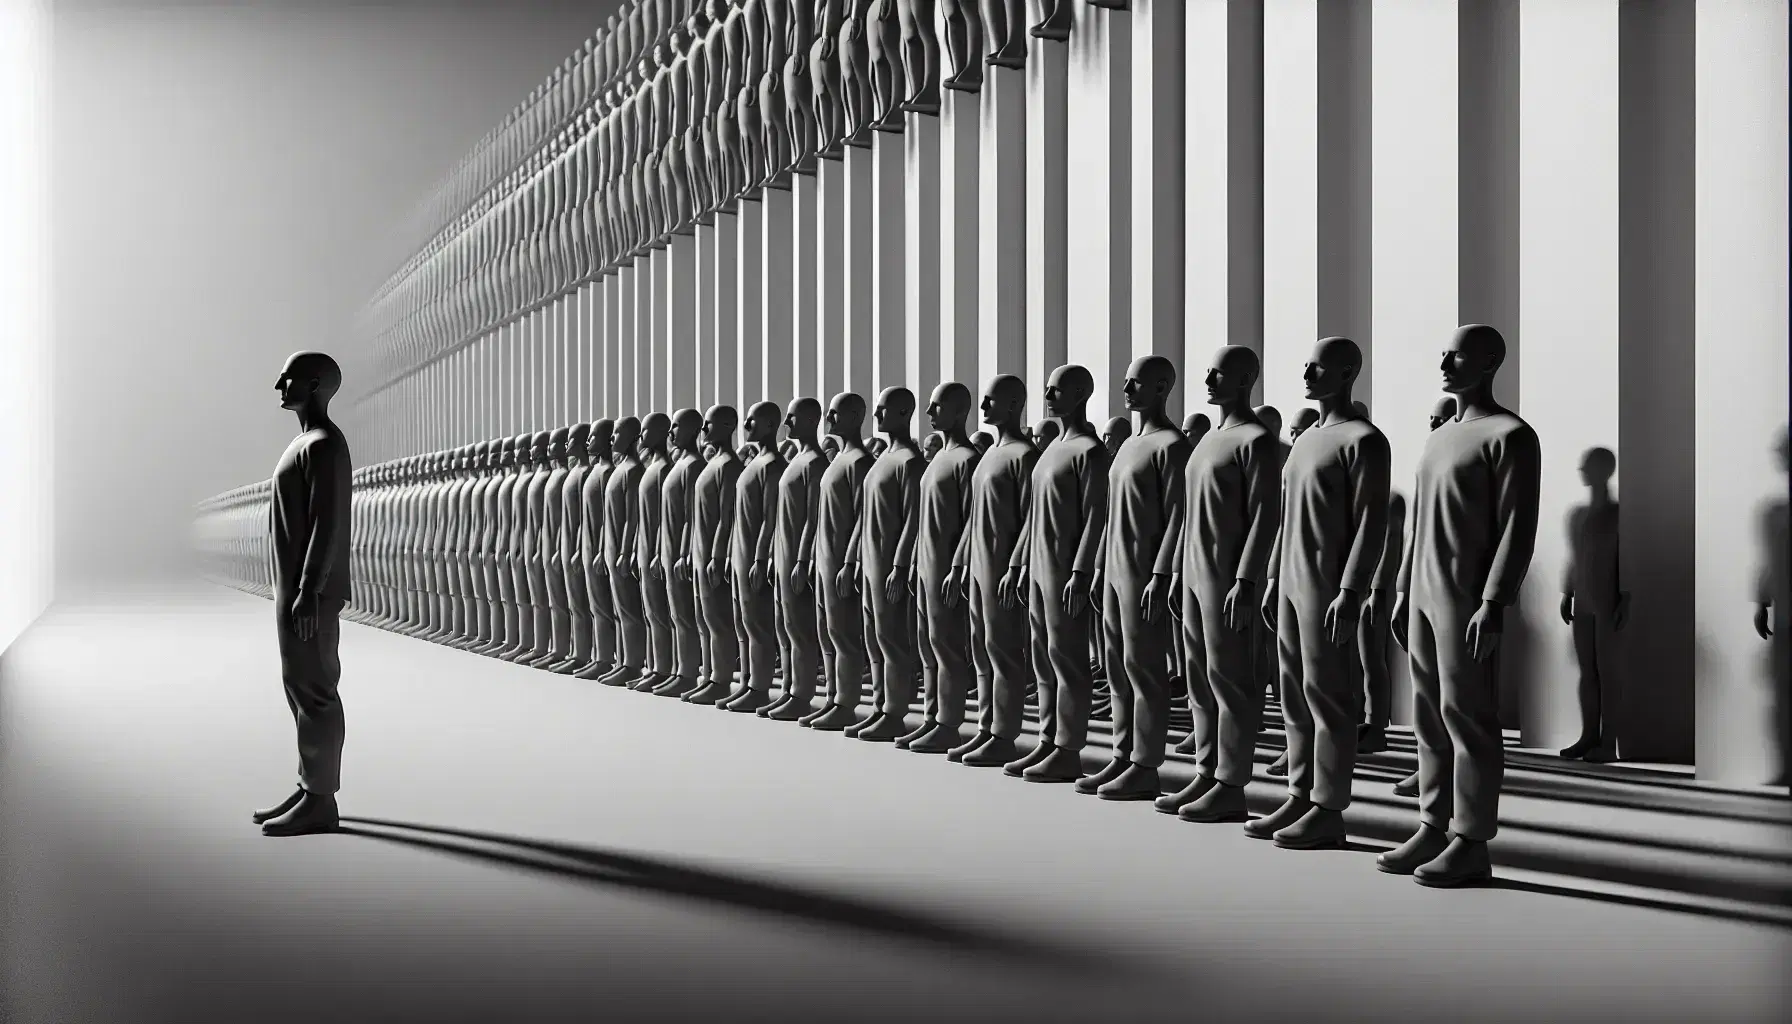 Figuras humanas en tonos grises y negros alineadas en filas, una resalta ligeramente adelante, simbolizando uniformidad y falta de individualidad.